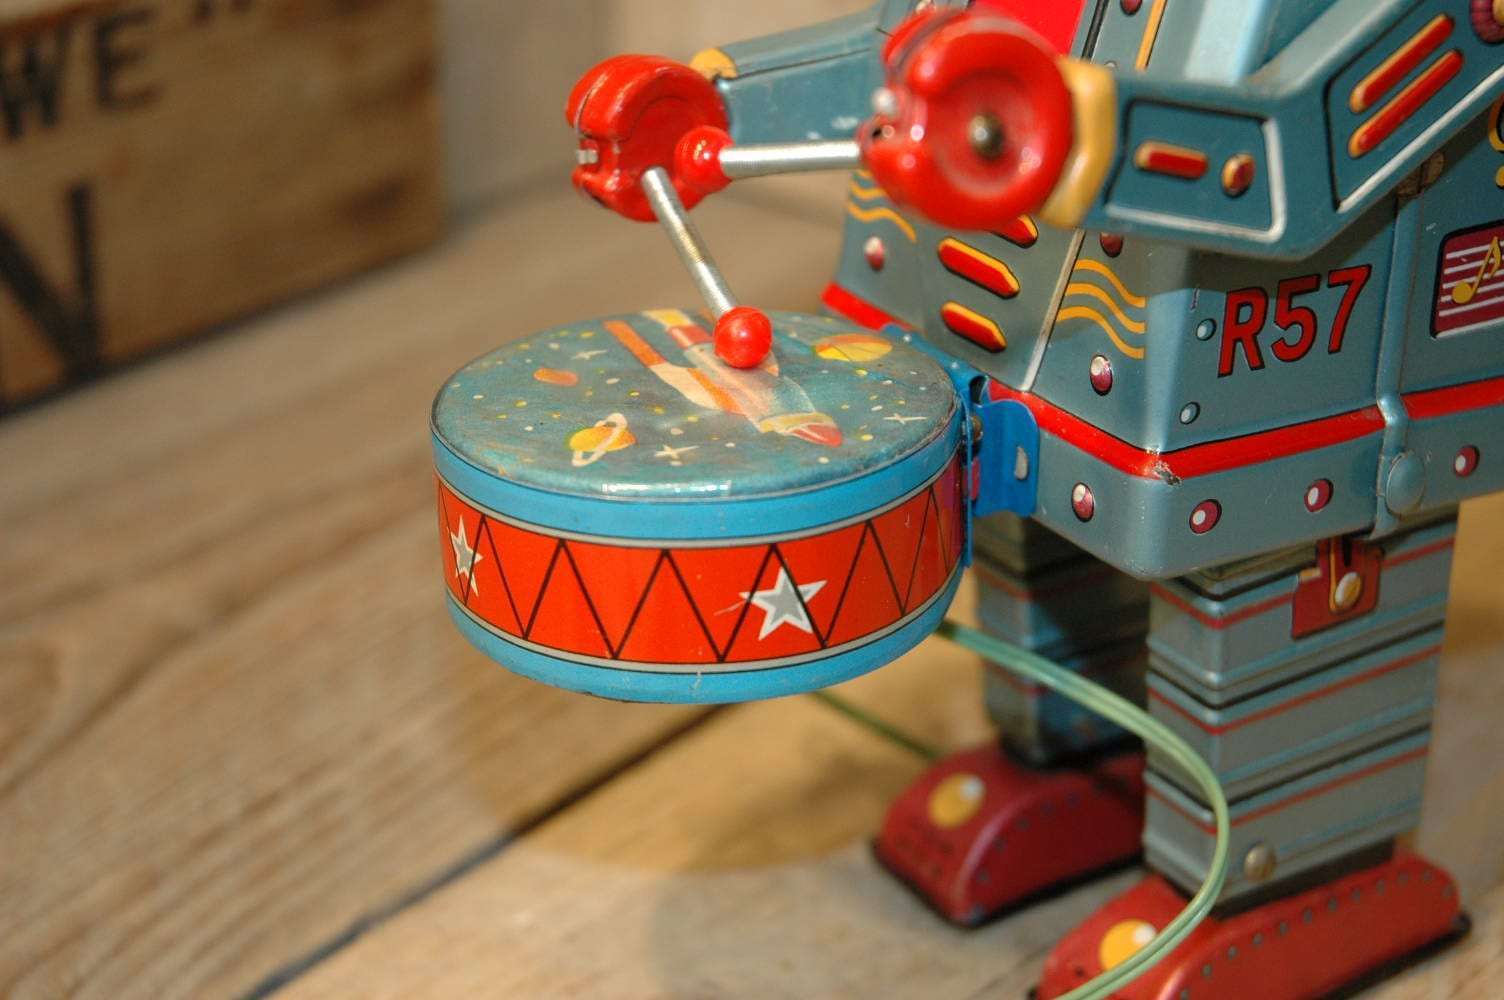 Nomura - Musical Drummer Robot